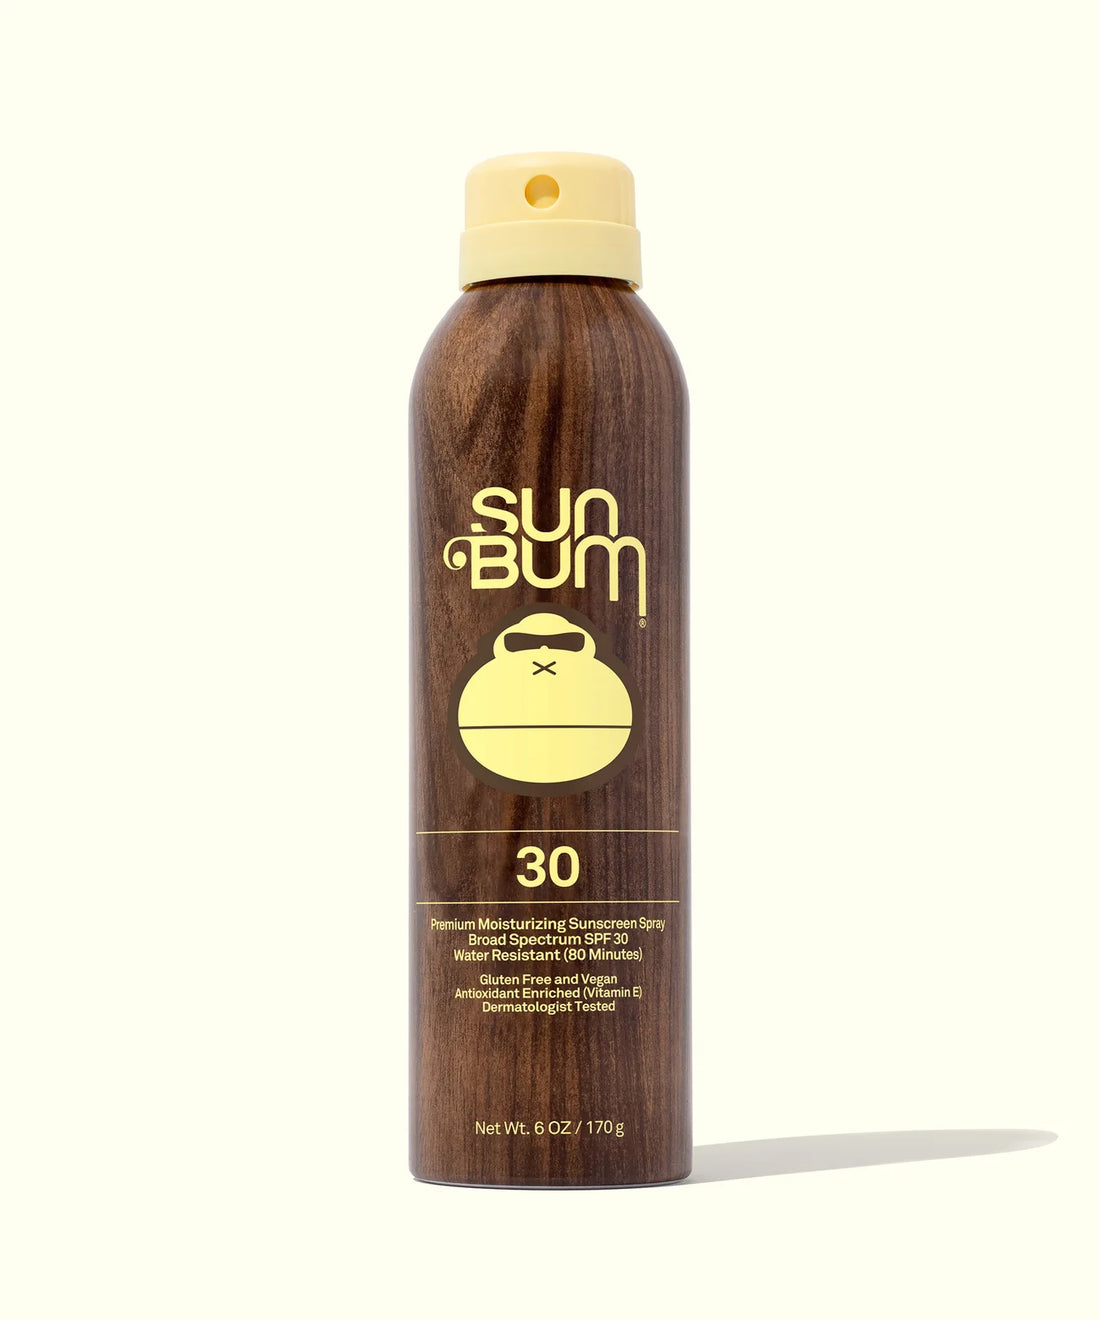 Sum Bum Original Sunscreen Spray